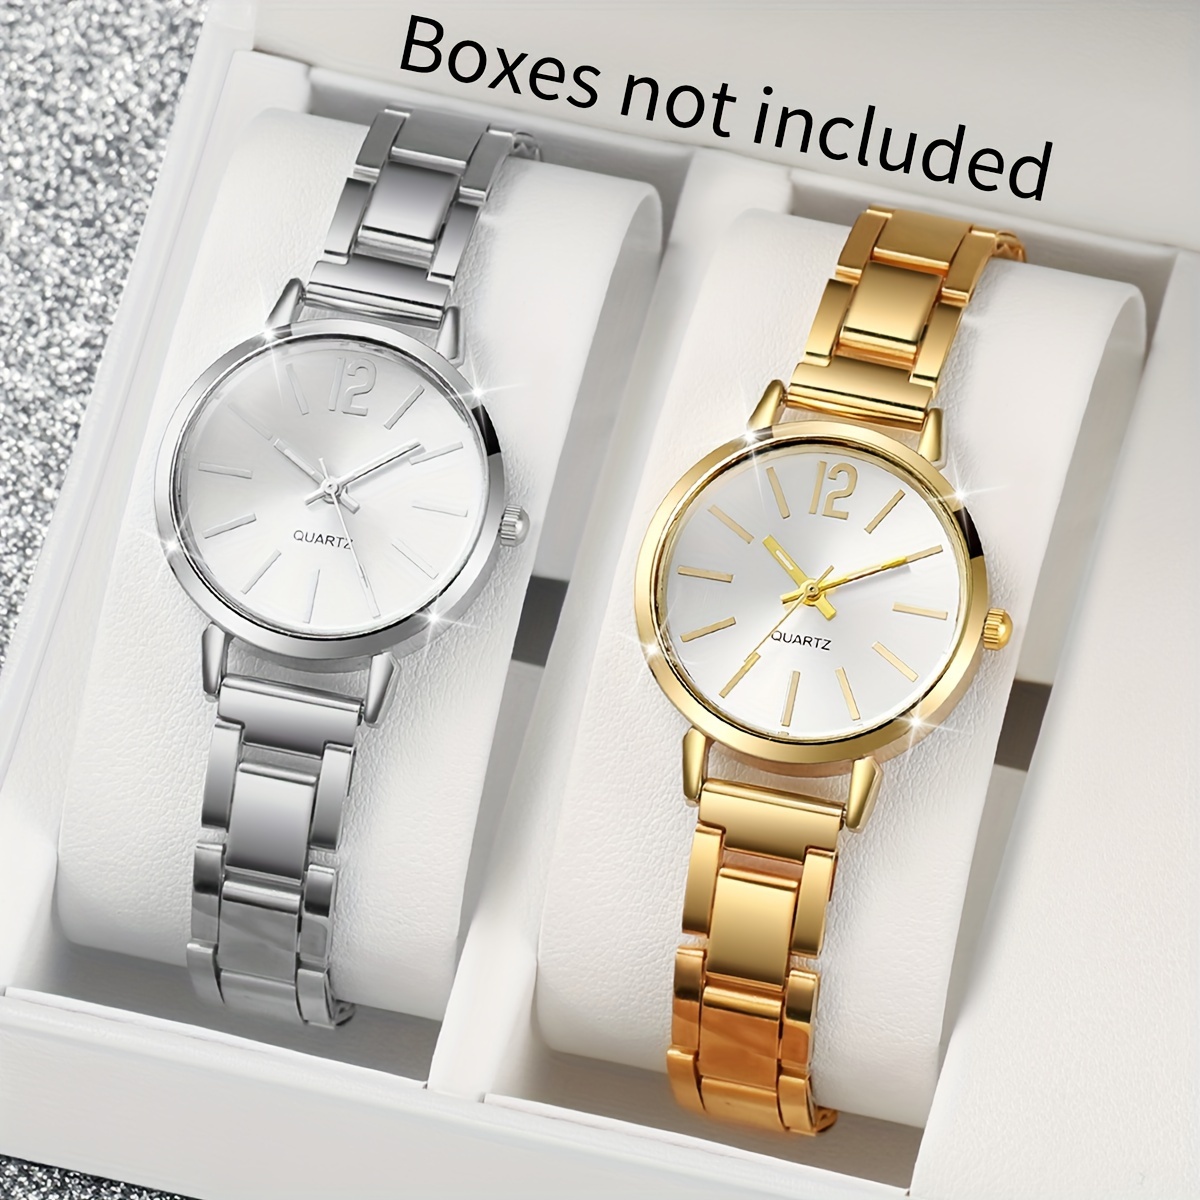 

2 montres à quartz pour femmes, bracelet en acier, style simple, échelle numérique, choix idéal pour les cadeaux